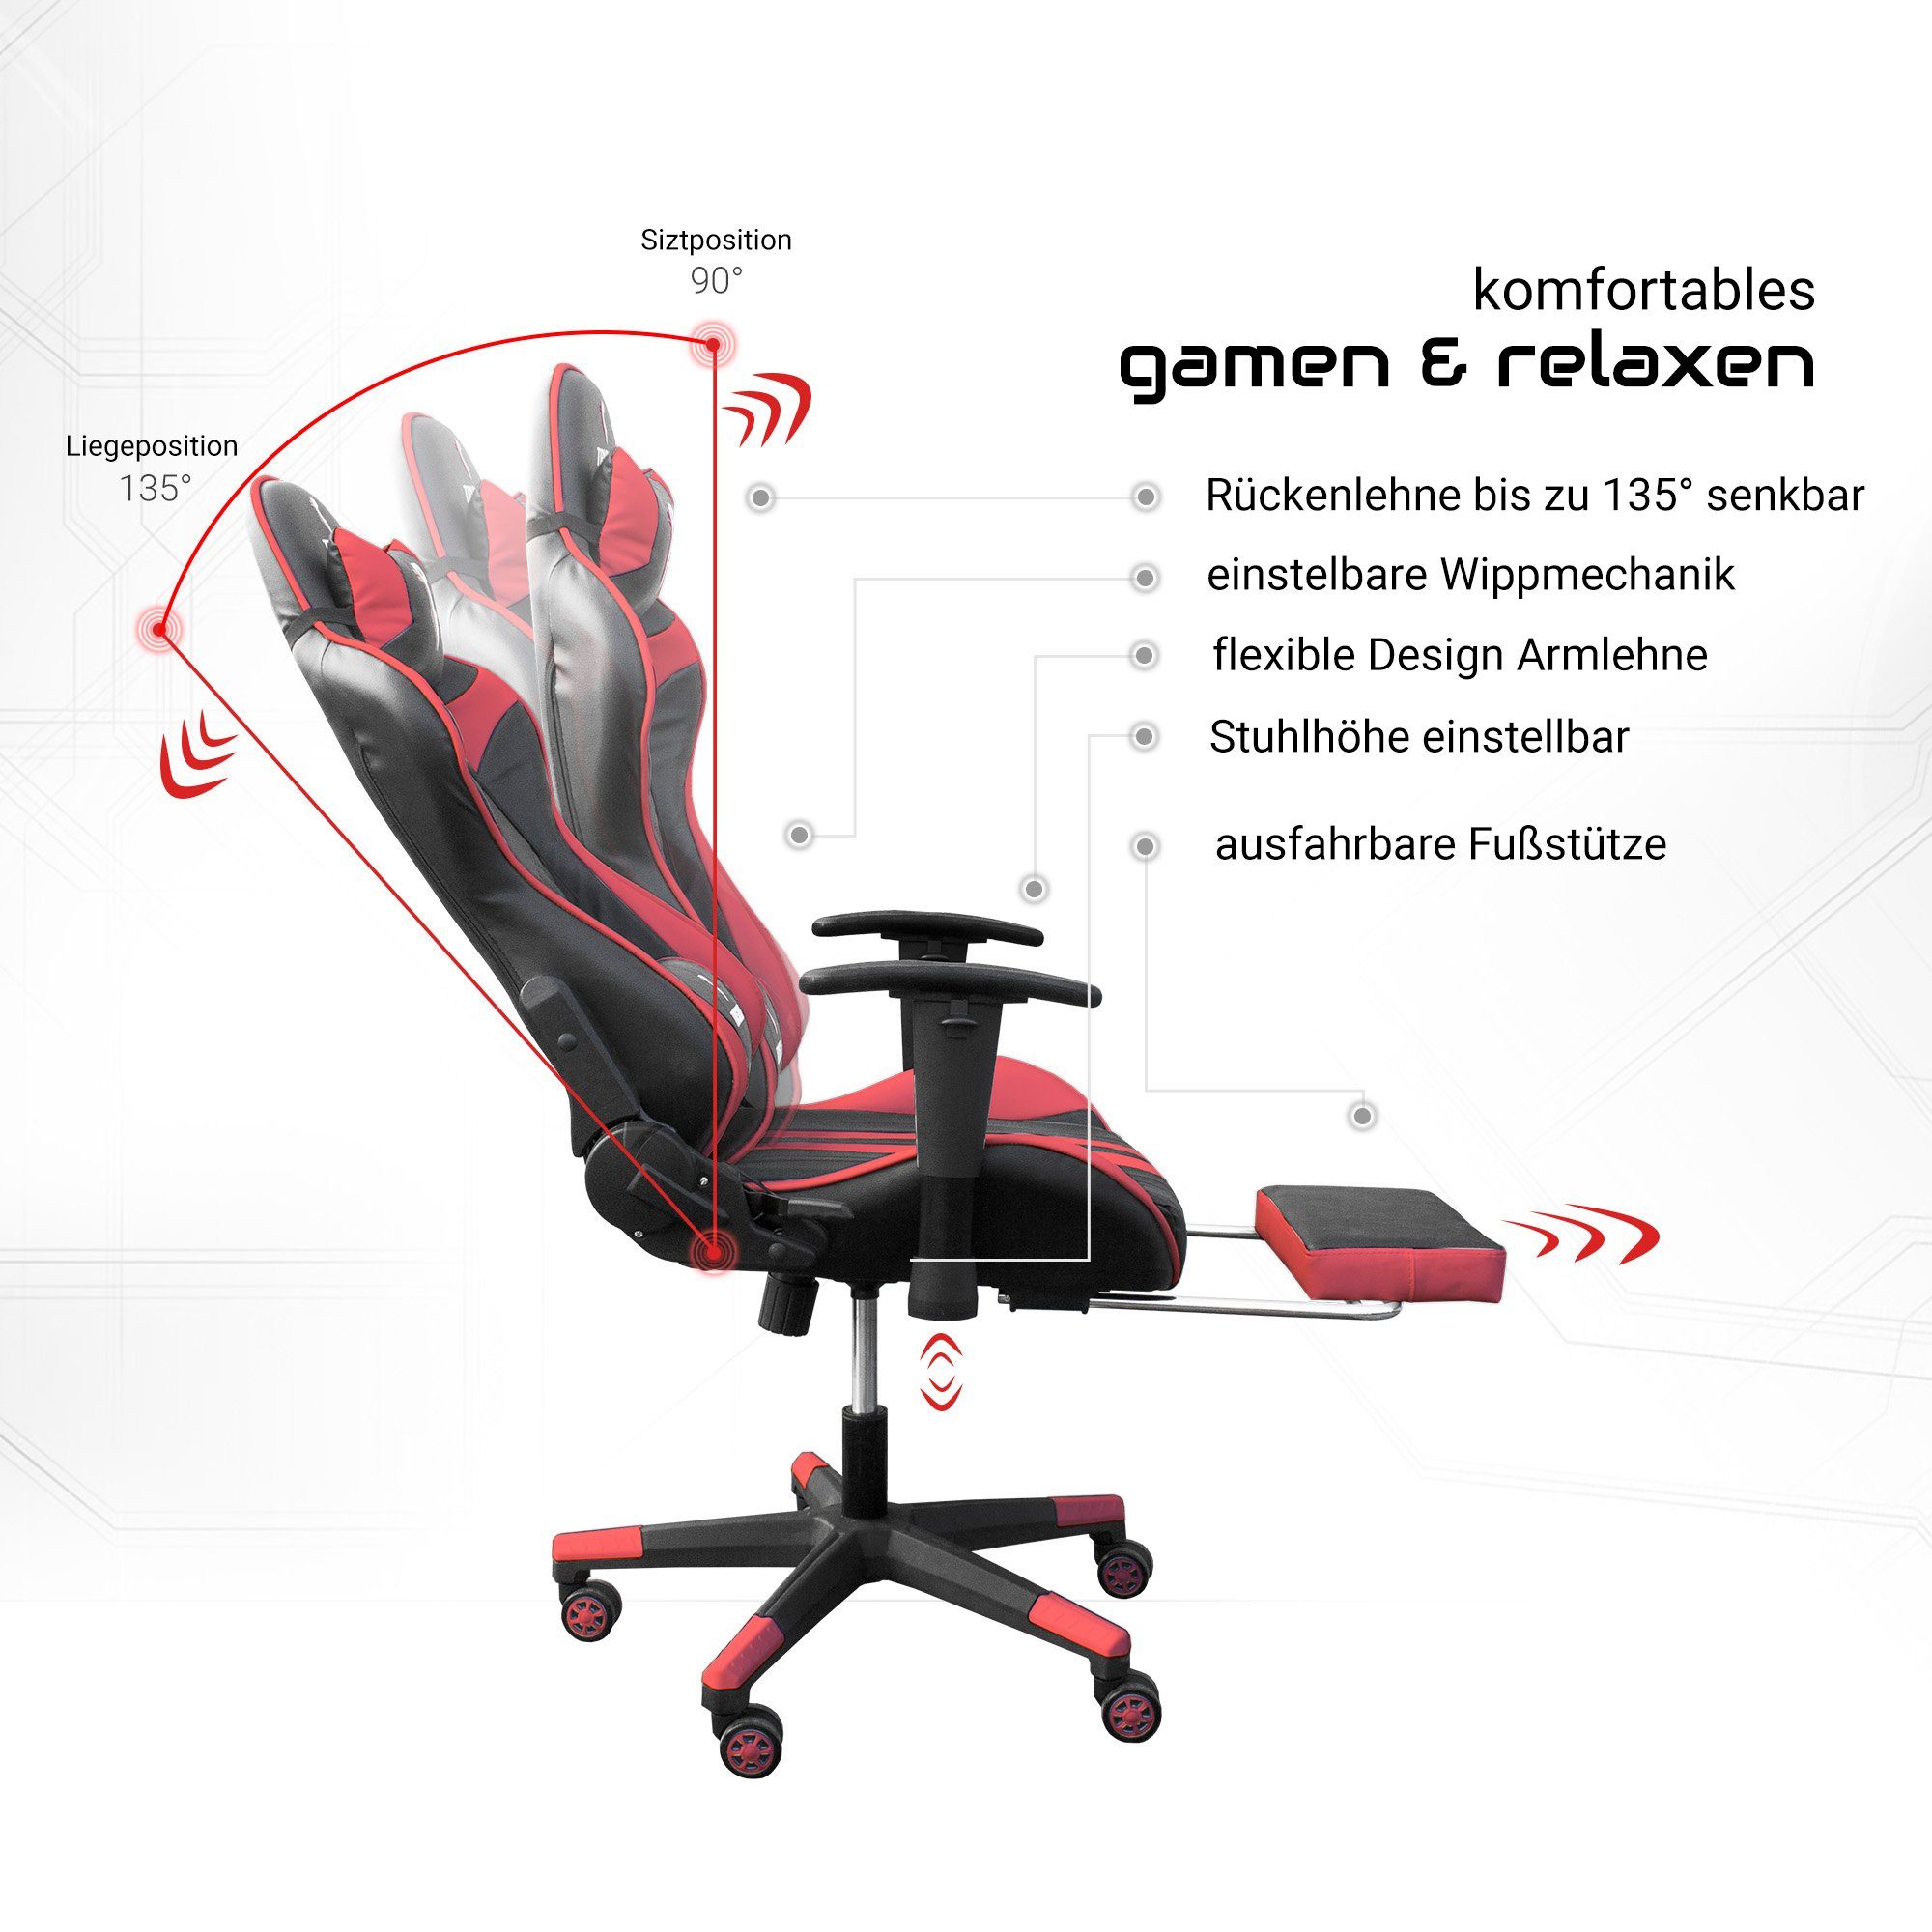 Racing-Design Rot Chefsessel TRISENS (einzeln), Armlehnen Schwarz mit im flexiblen Thanos Gaming Bürostuhl / Stuhl